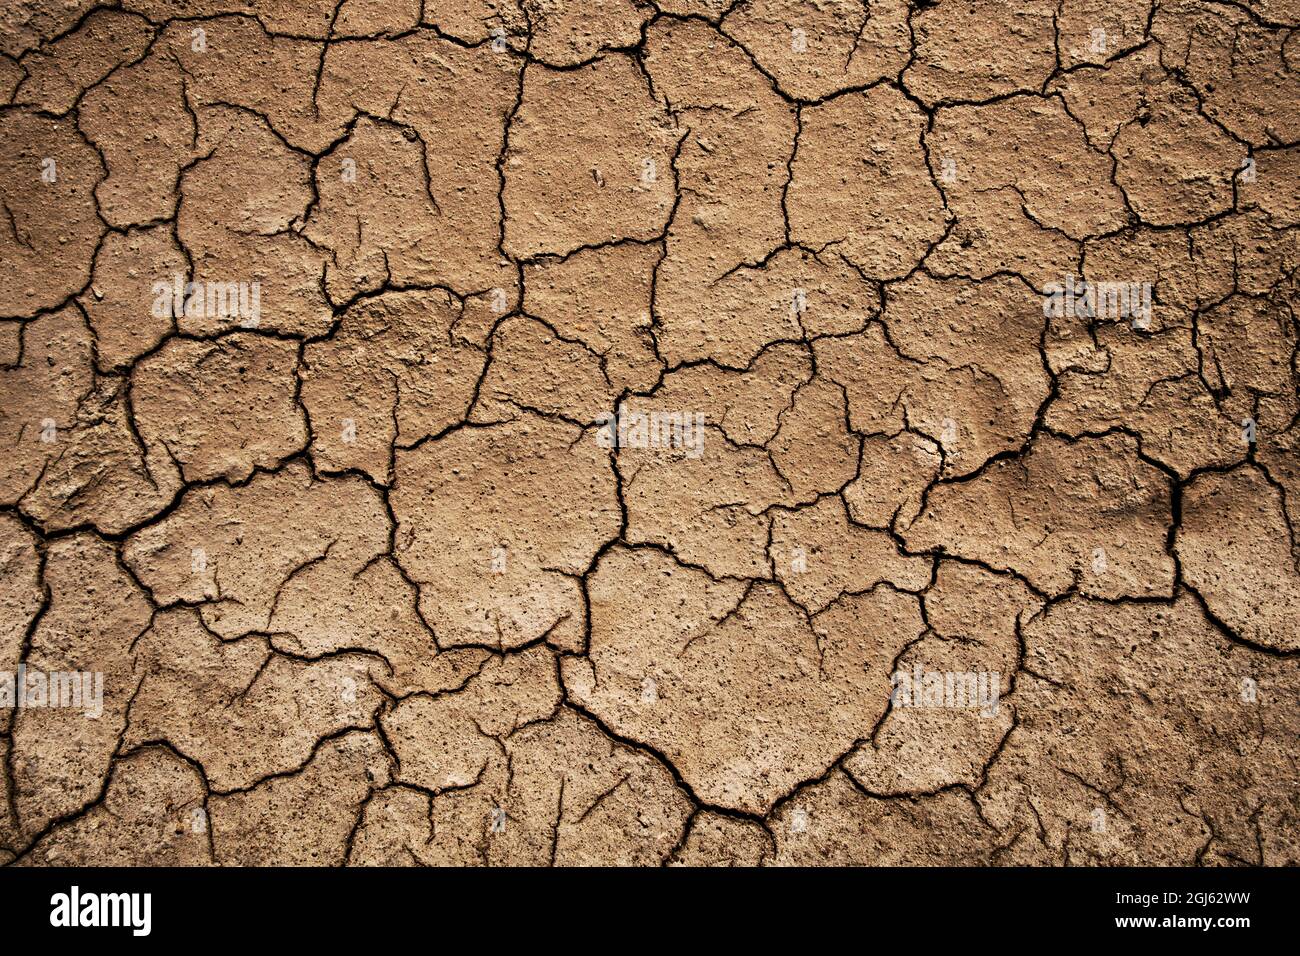 Trockene und rissige Bodenbedingungen, was auf eine Verschlechterung der Natur, Wüste, globale Erwärmung hinweist. Hungersnot. Für Textur oder abstrakten Hintergrund Stockfoto